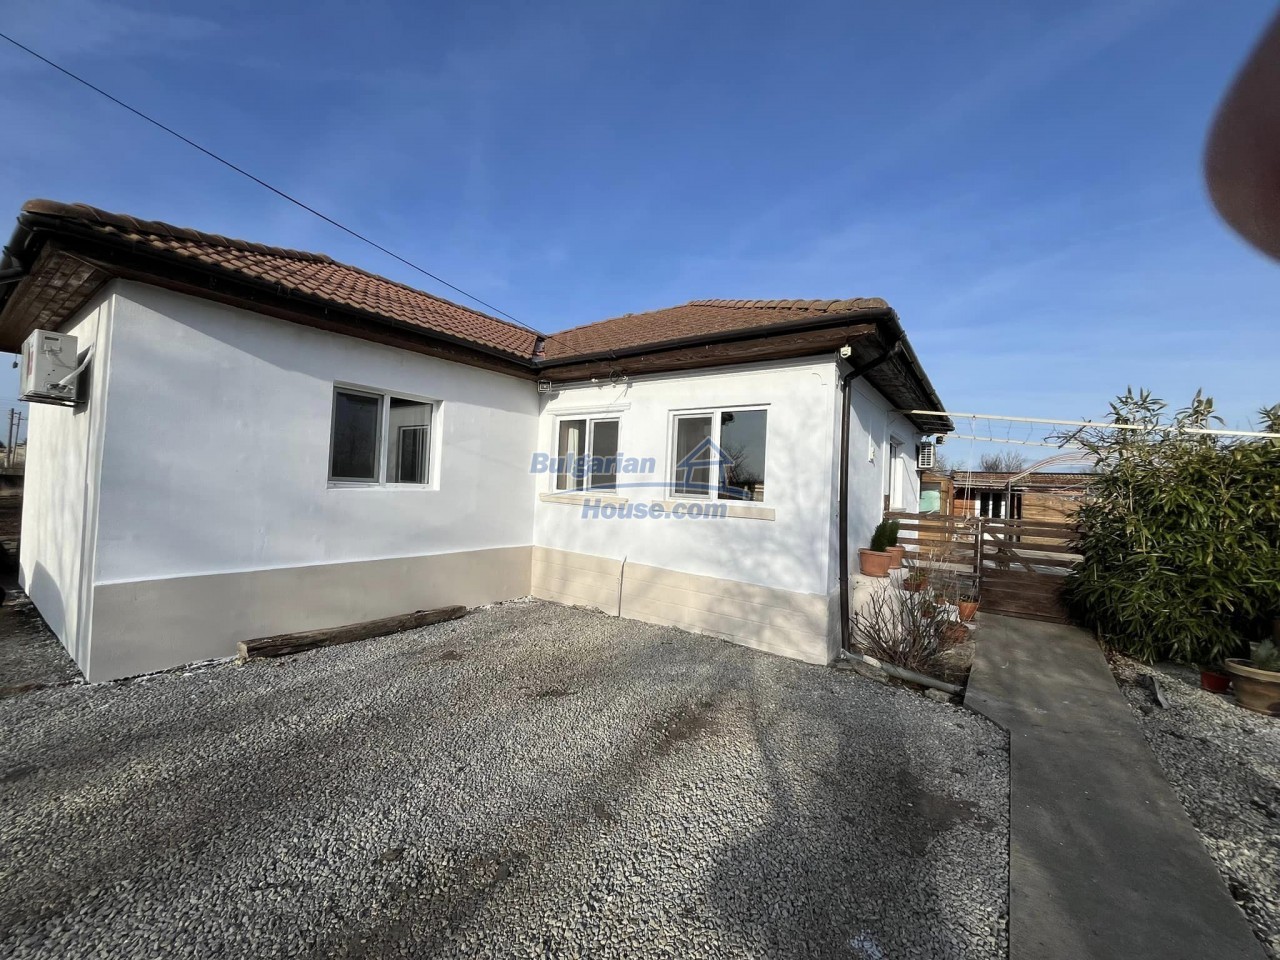 Къщи за продан до Добрич - 14805